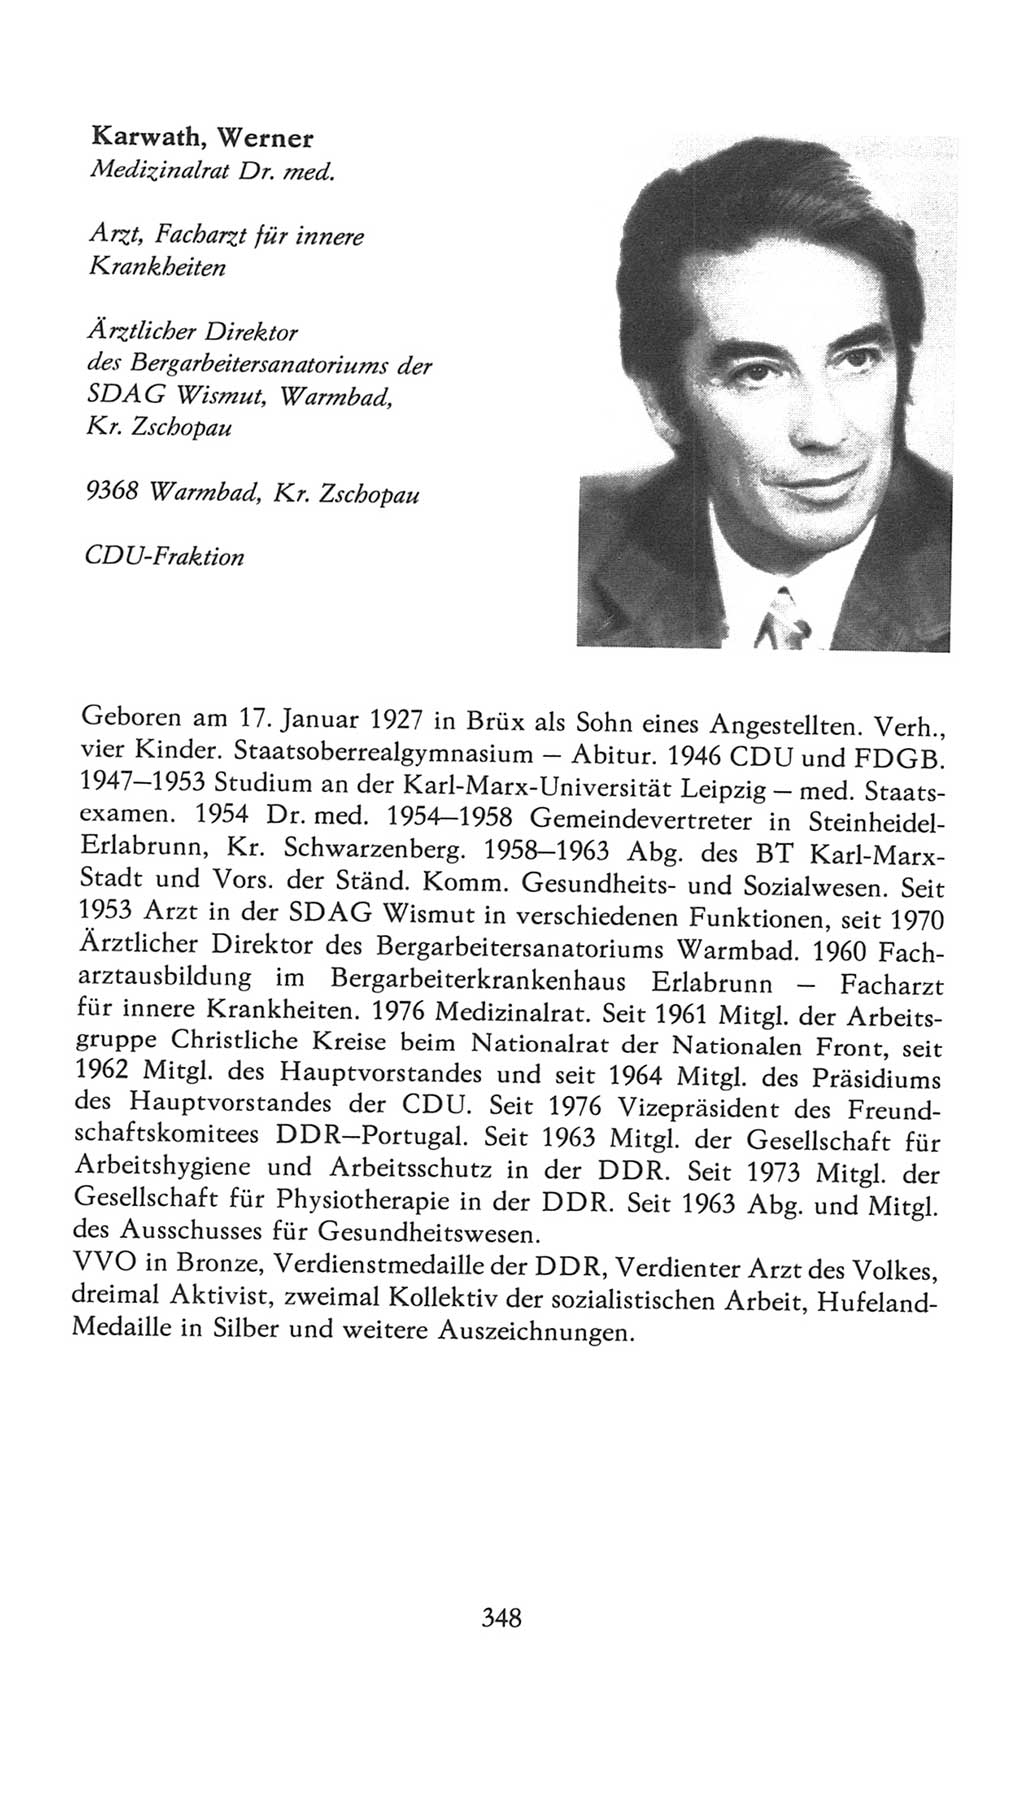 Volkskammer (VK) der Deutschen Demokratischen Republik (DDR), 7. Wahlperiode 1976-1981, Seite 348 (VK. DDR 7. WP. 1976-1981, S. 348)